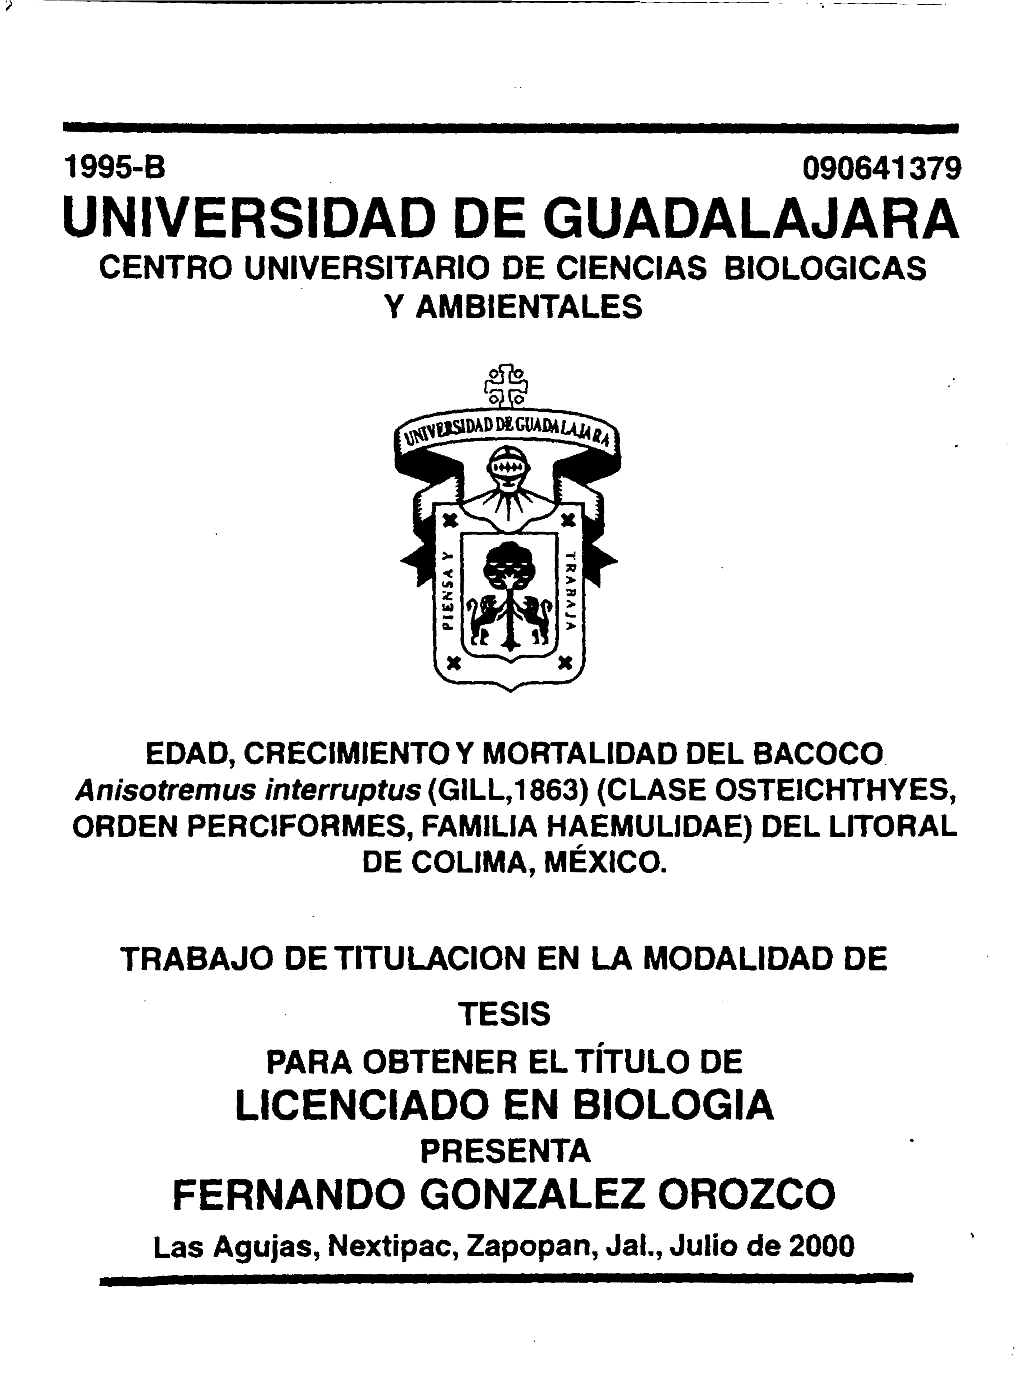 1995-B 090641379 Universidad De Guadalajara Centro Universitario De Ciencias Biologicas Y Ambientales